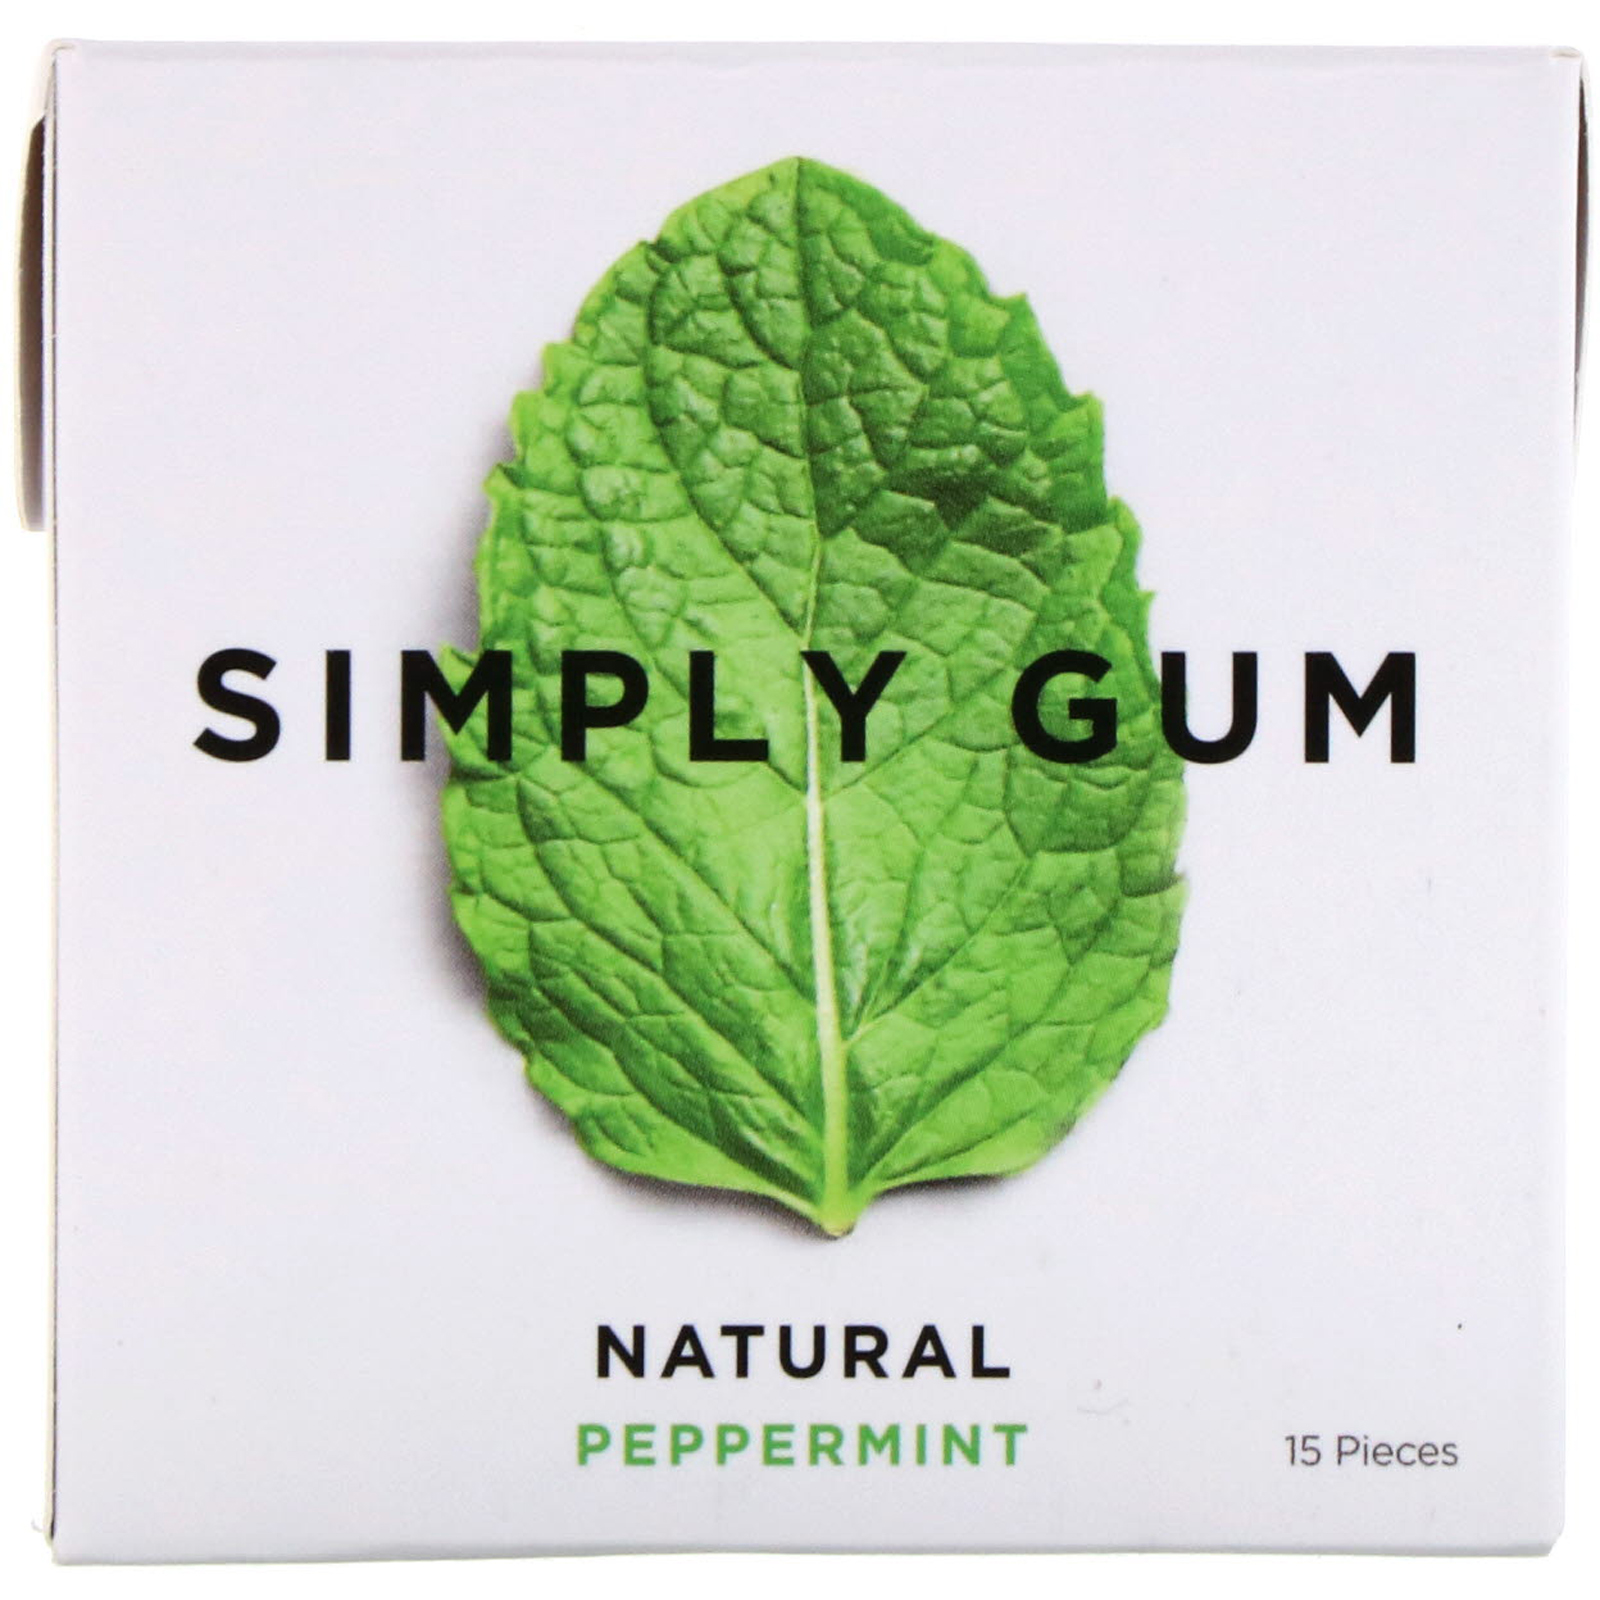 Simply gum